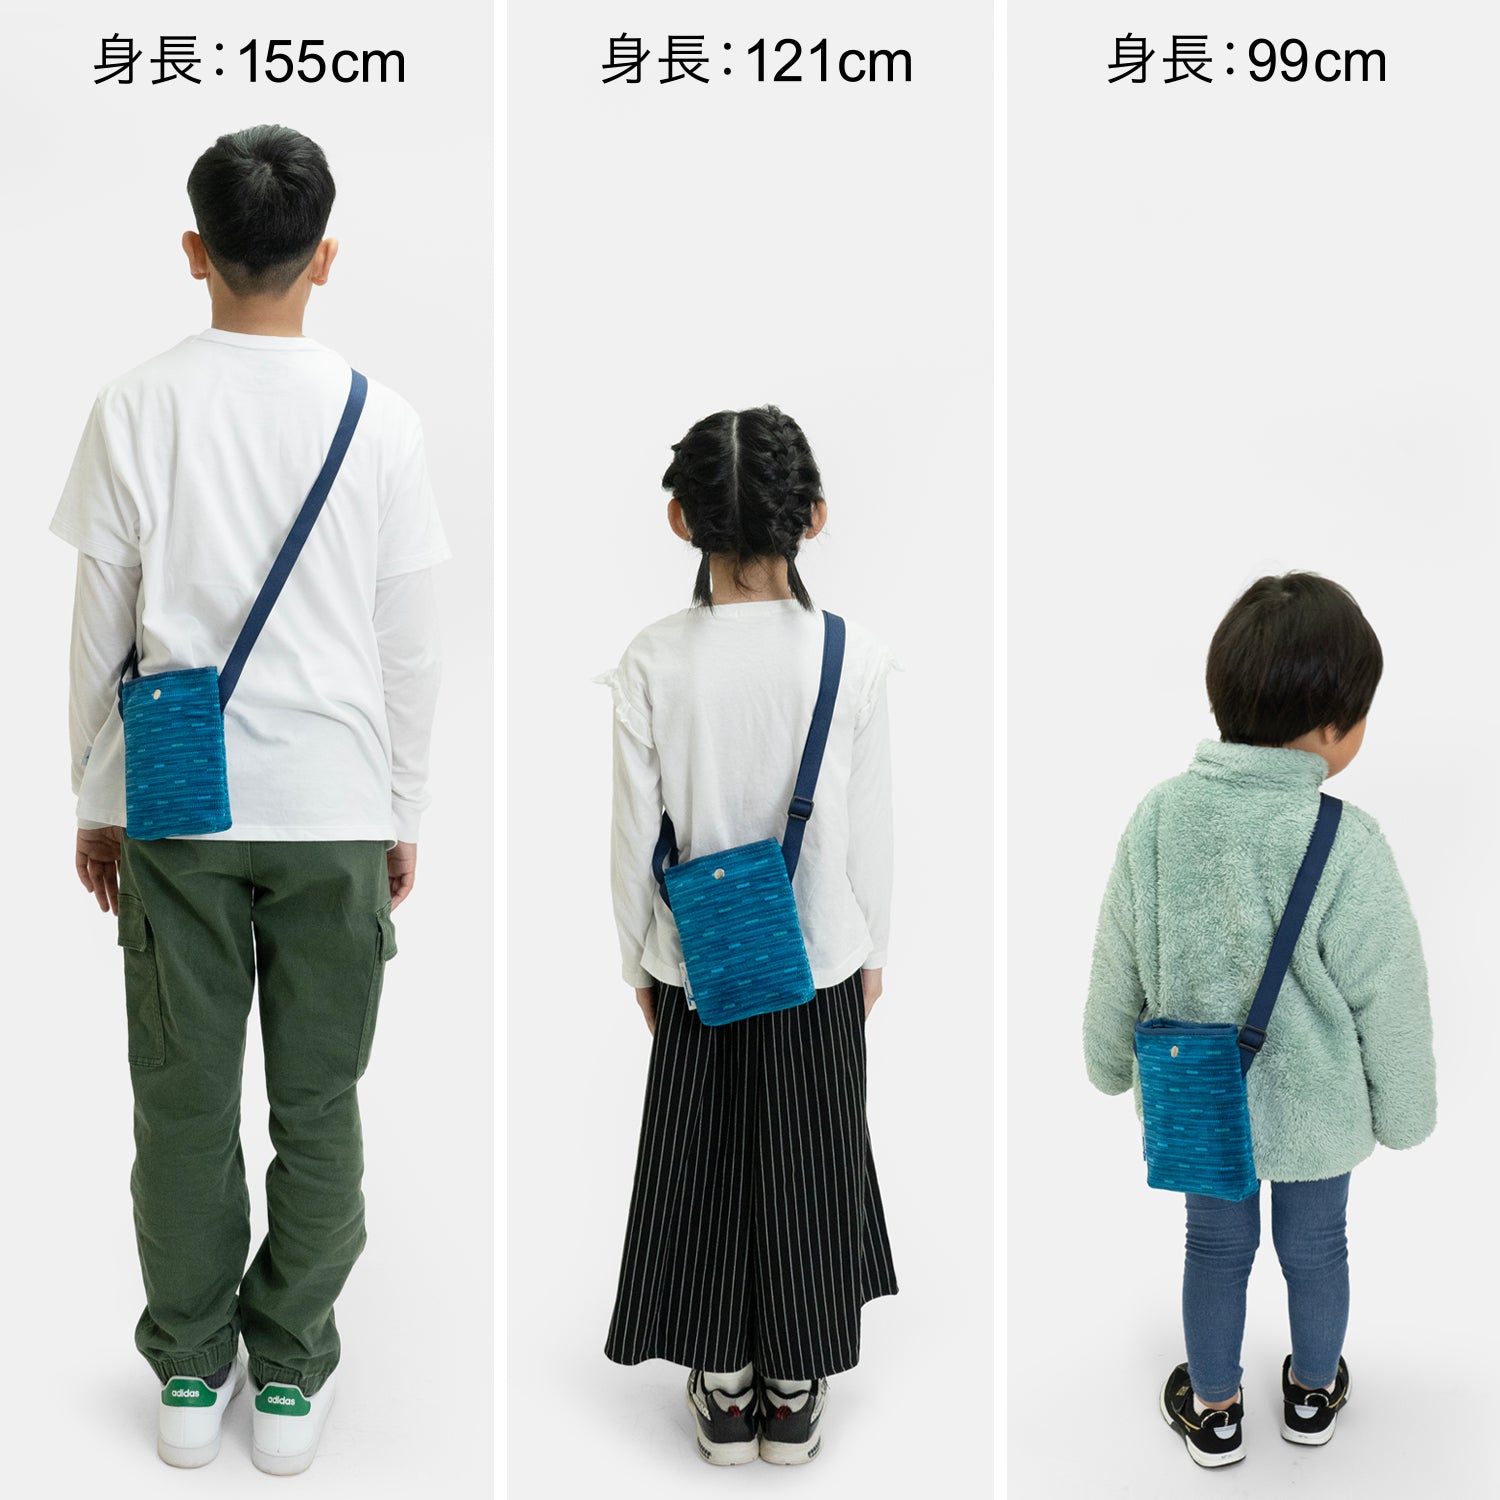 N700A東海道新幹線モケットスマホショルダーは、大人はもちろん子供も使えるショルダーバッグです。身長に合わせてショルダーの長さを調整して、親子でシェアすることもできます。